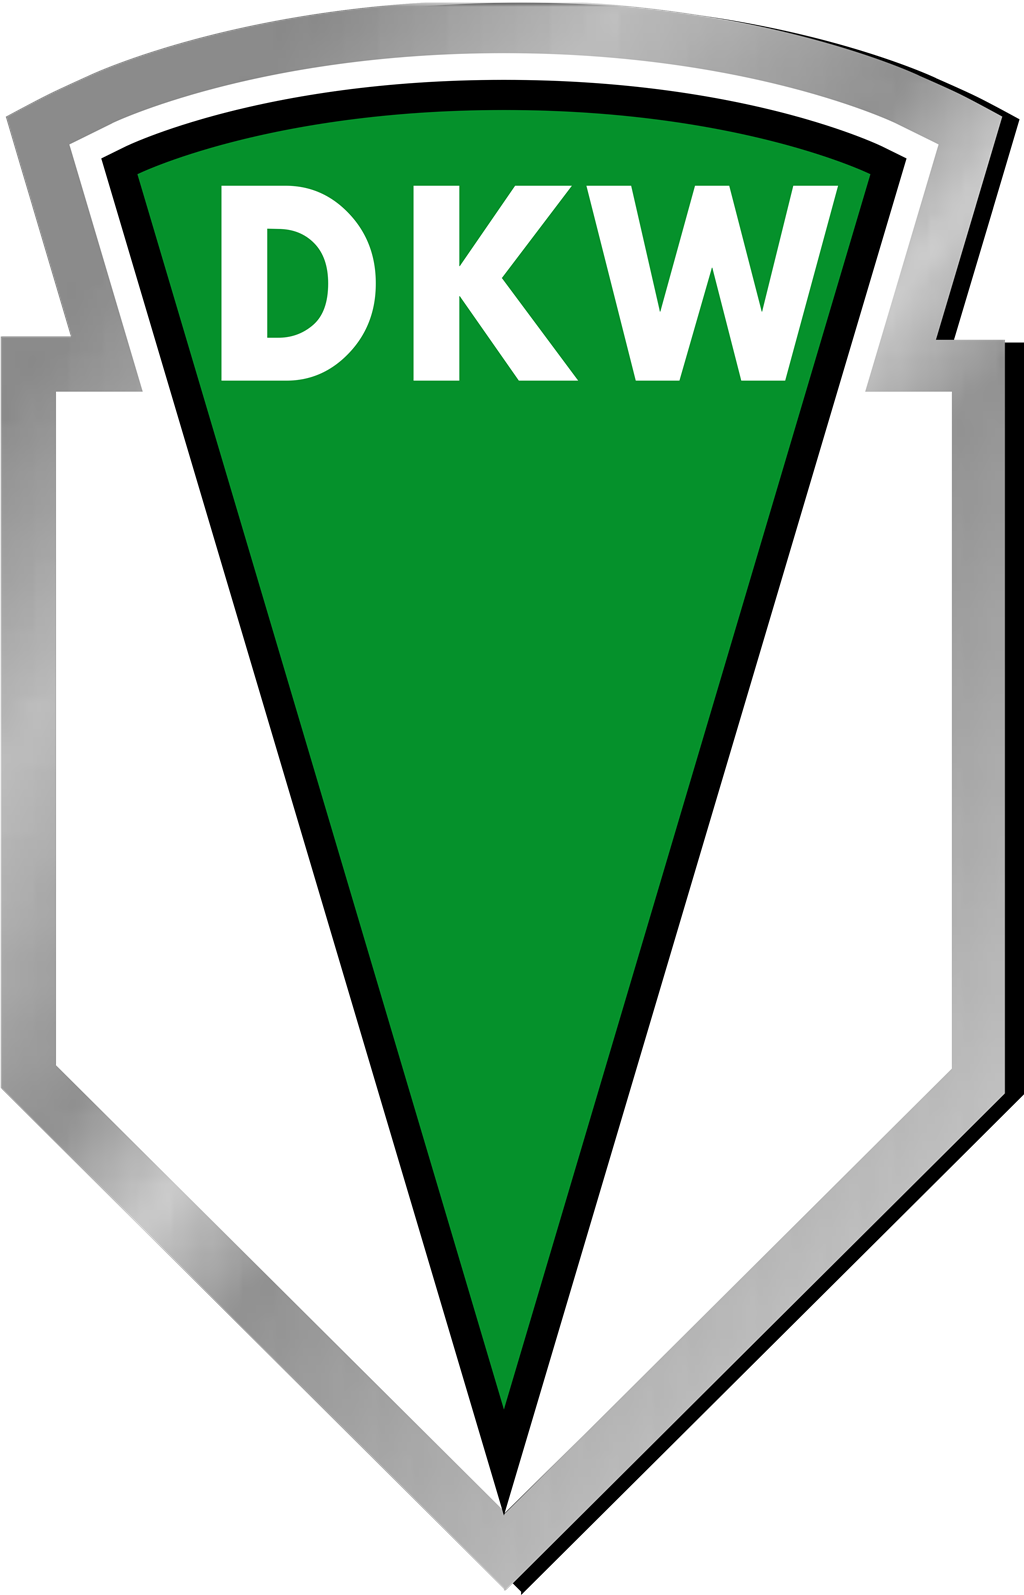 Dampf-Kraft-Wagen logotype, transparent .png, medium, large